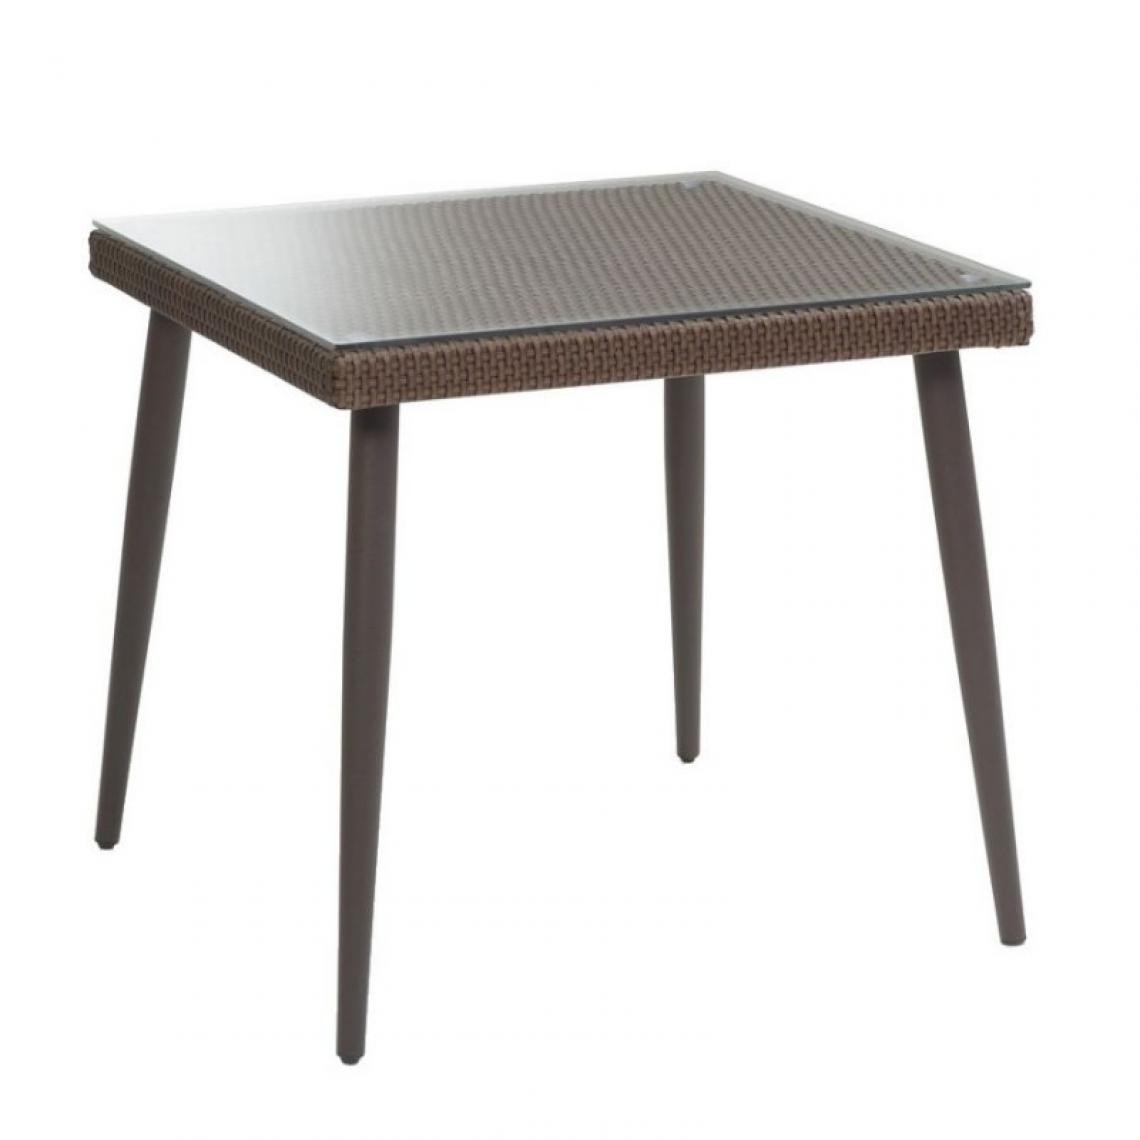 Webmarketpoint - Table en polyrotin Adila carré noyer avec verre cm90x90xh77 - Tables de jardin